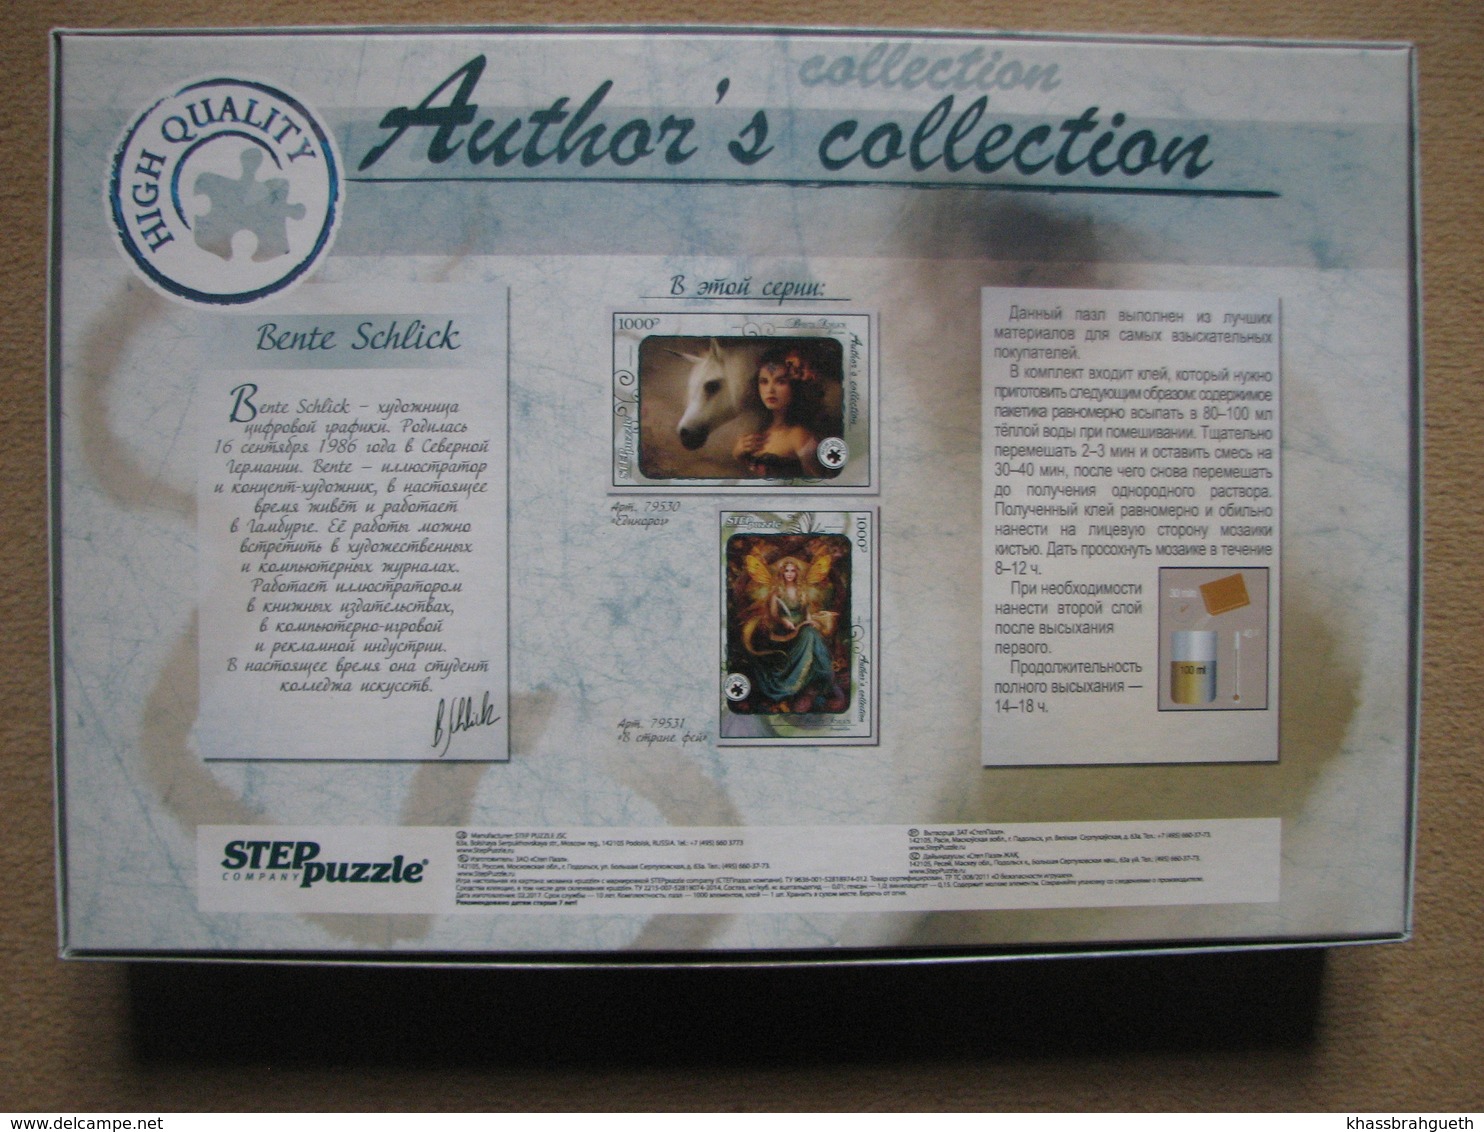 STEP PUZZLE - AUTHOR'S COLLECTION - BENTE SCHLICK - UNICORN (1000 P) - Puzzle Games